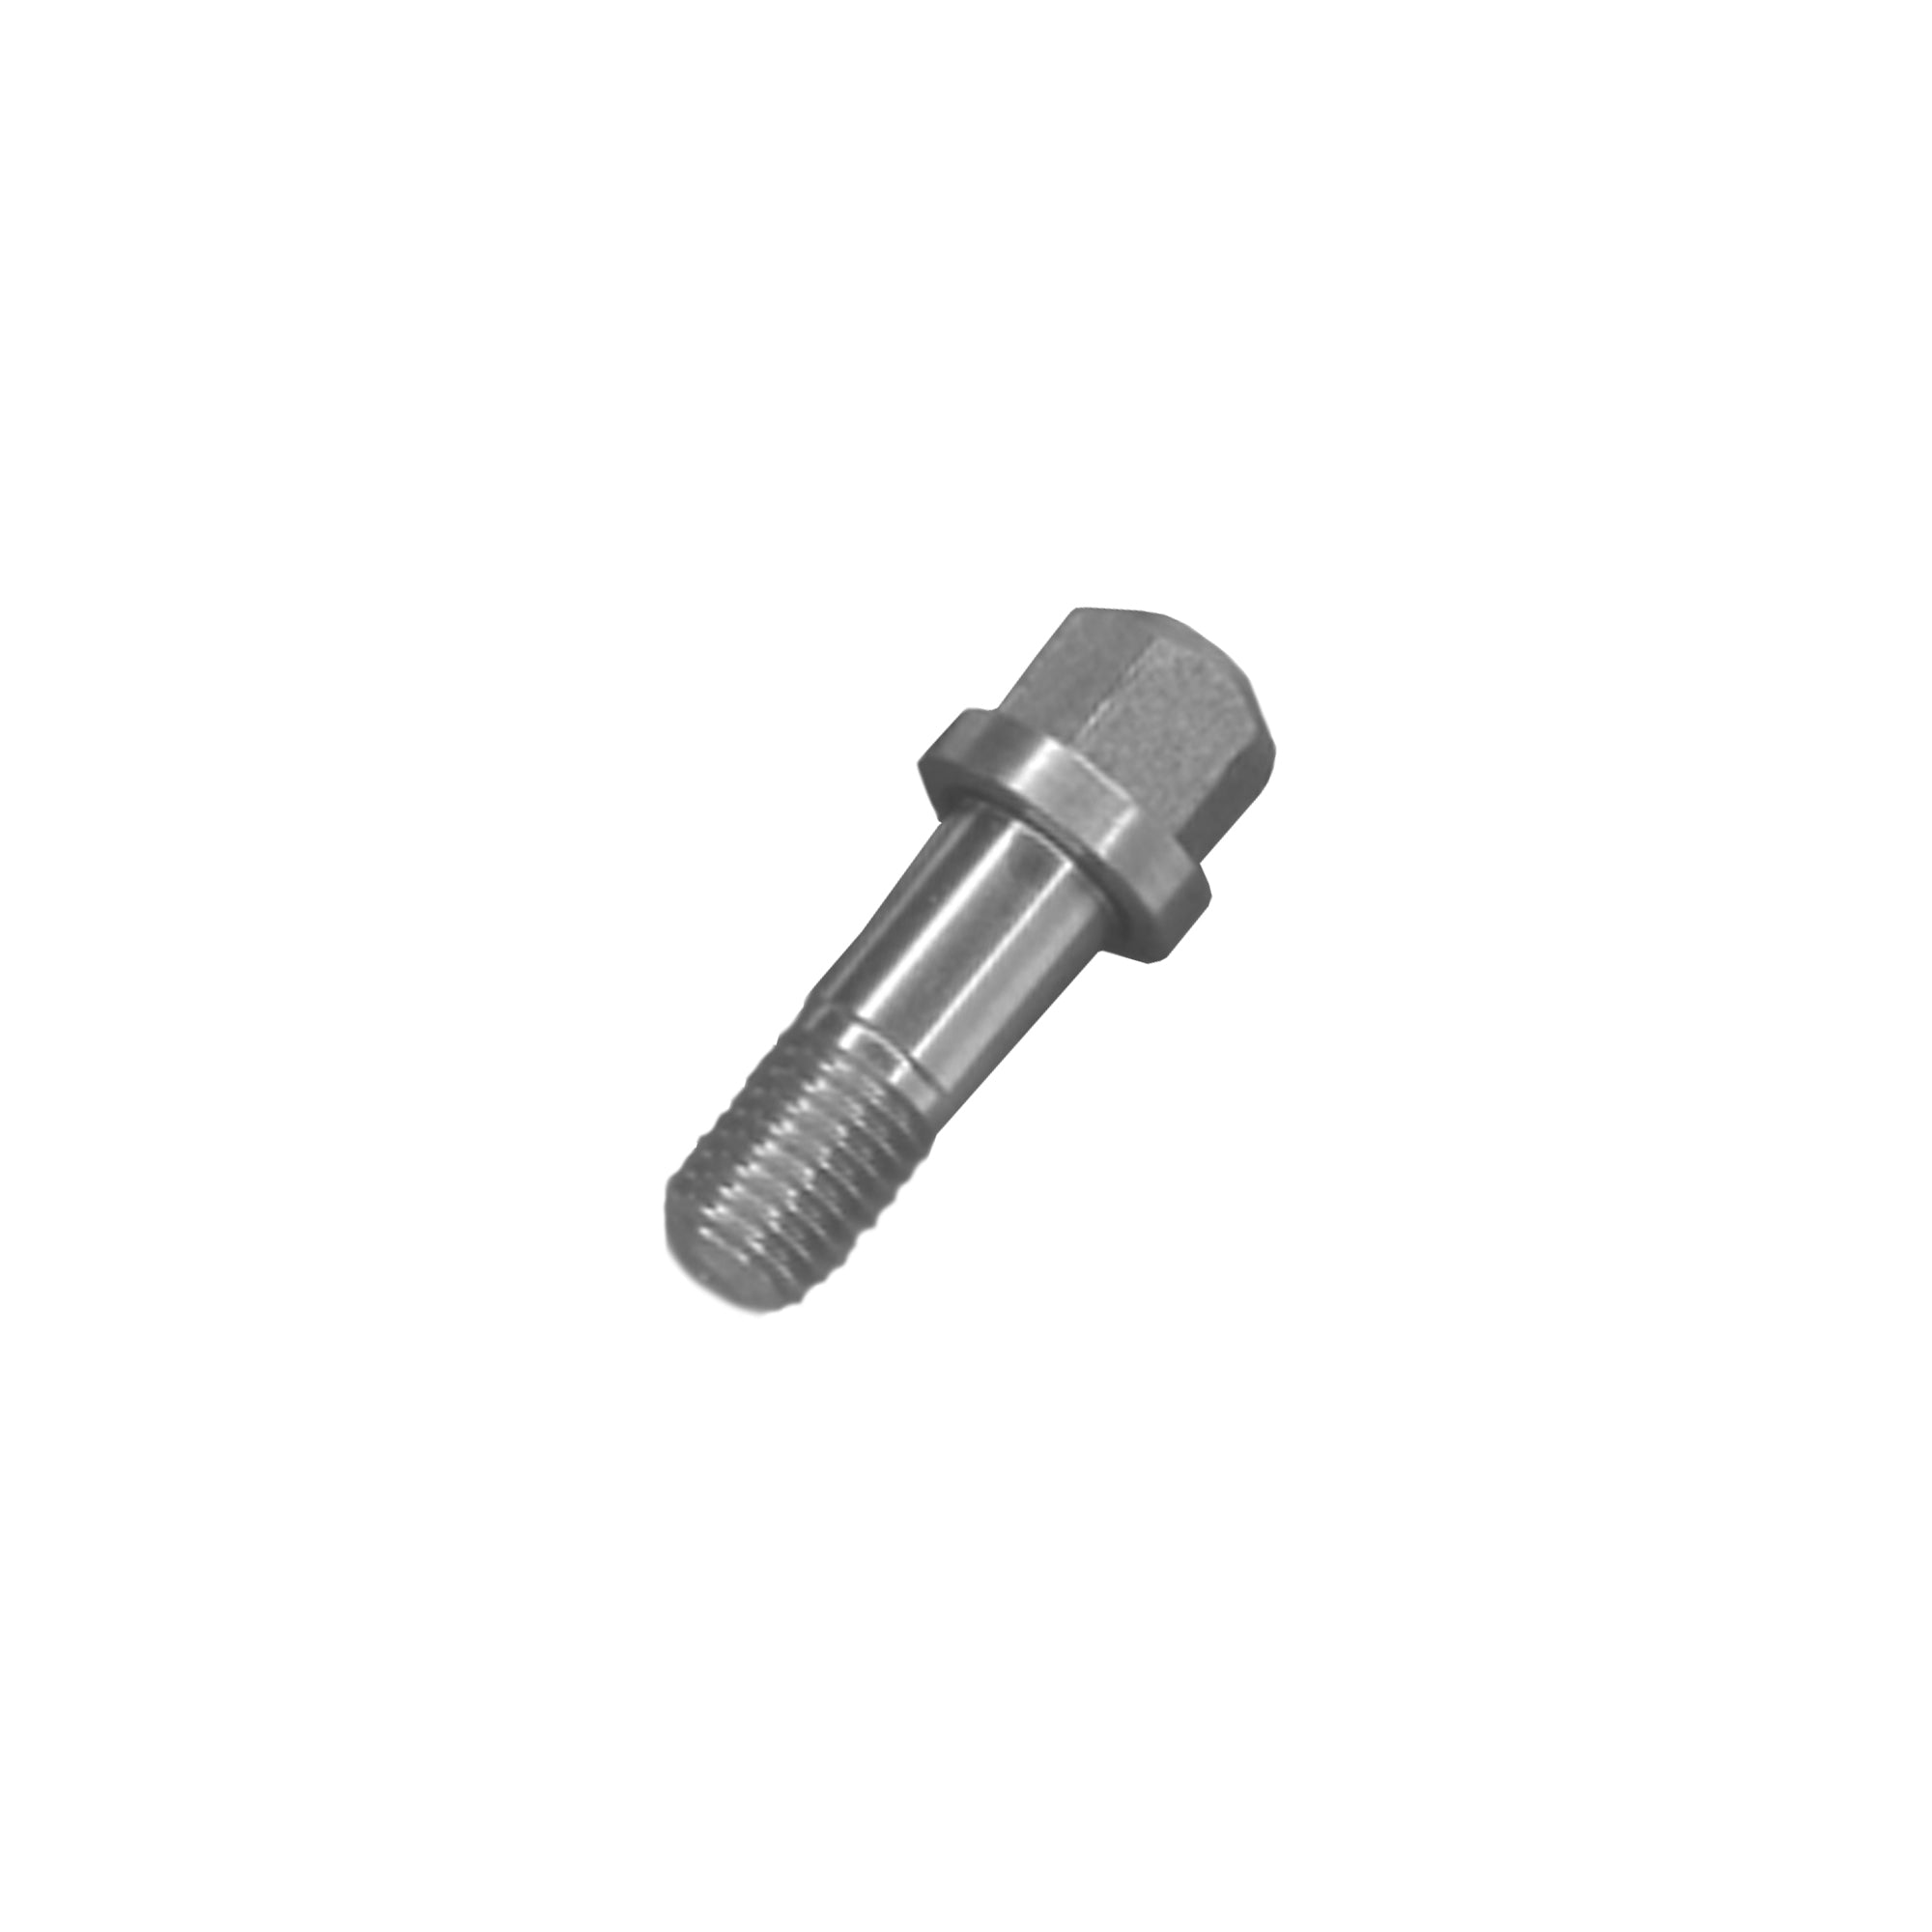 296979 -Coupling block mounting screw kit (pack of 2) - PURspray